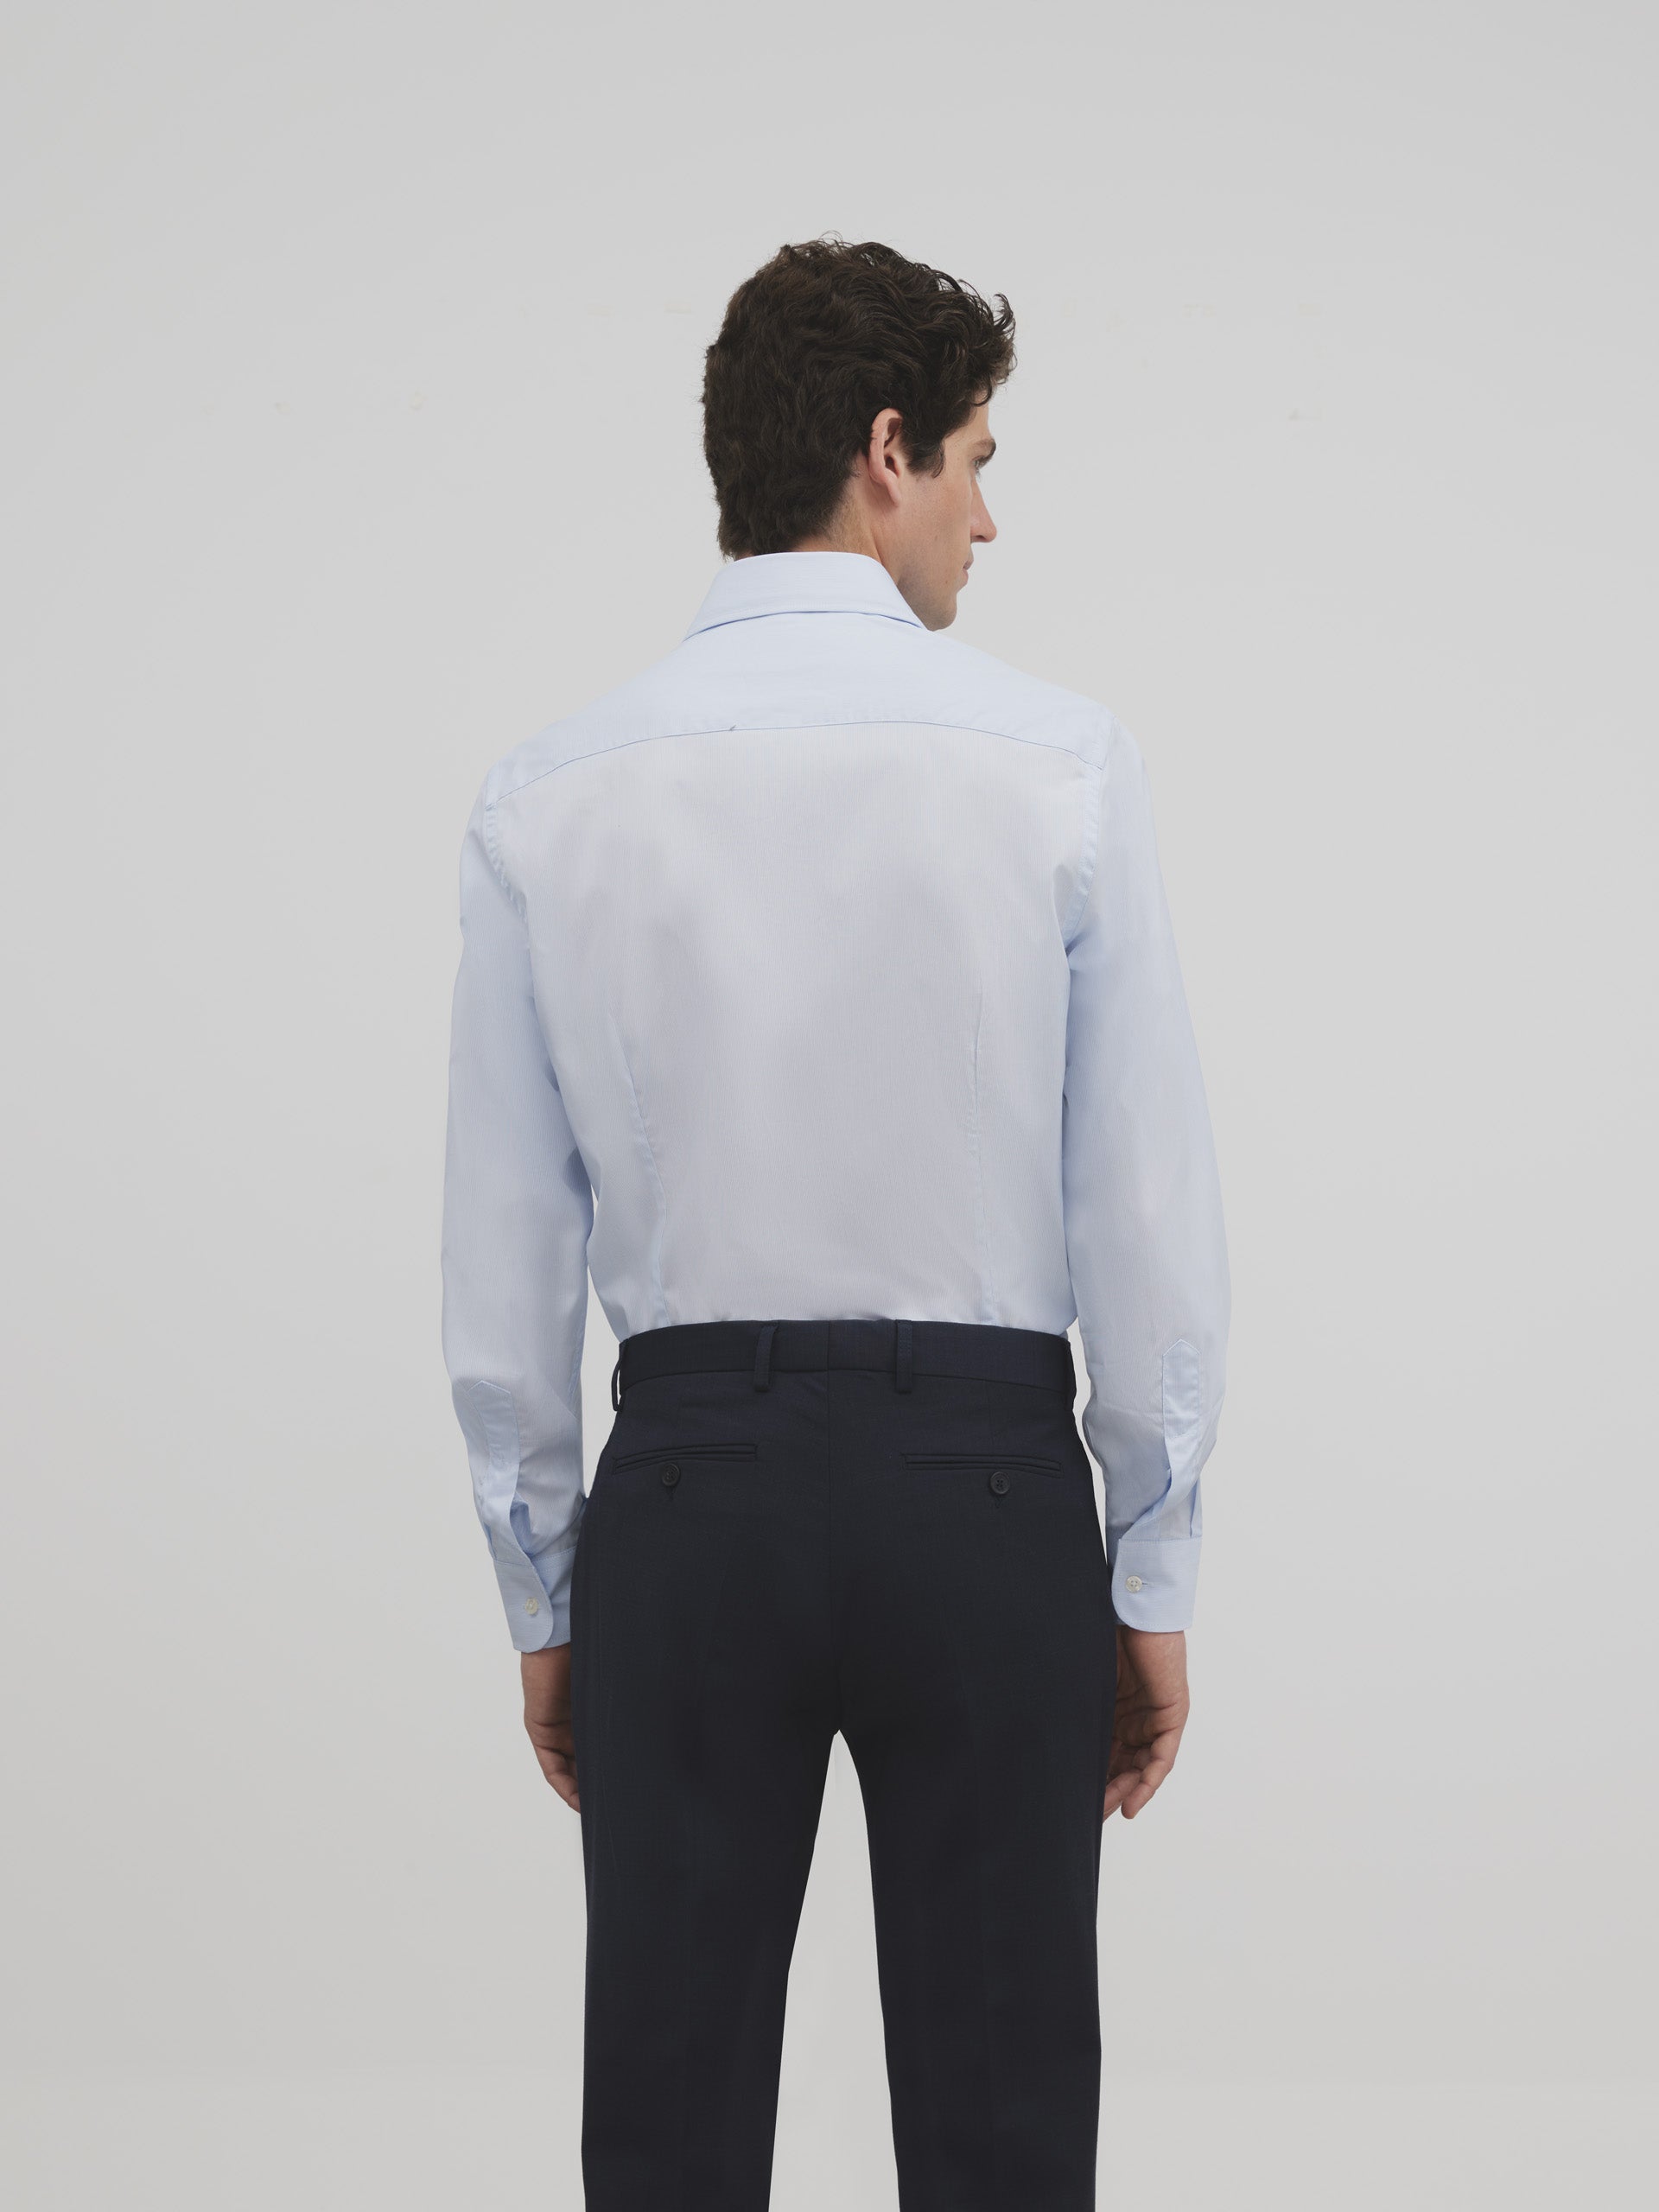 Chemise courte à rayures bleu clair avec poignet simple